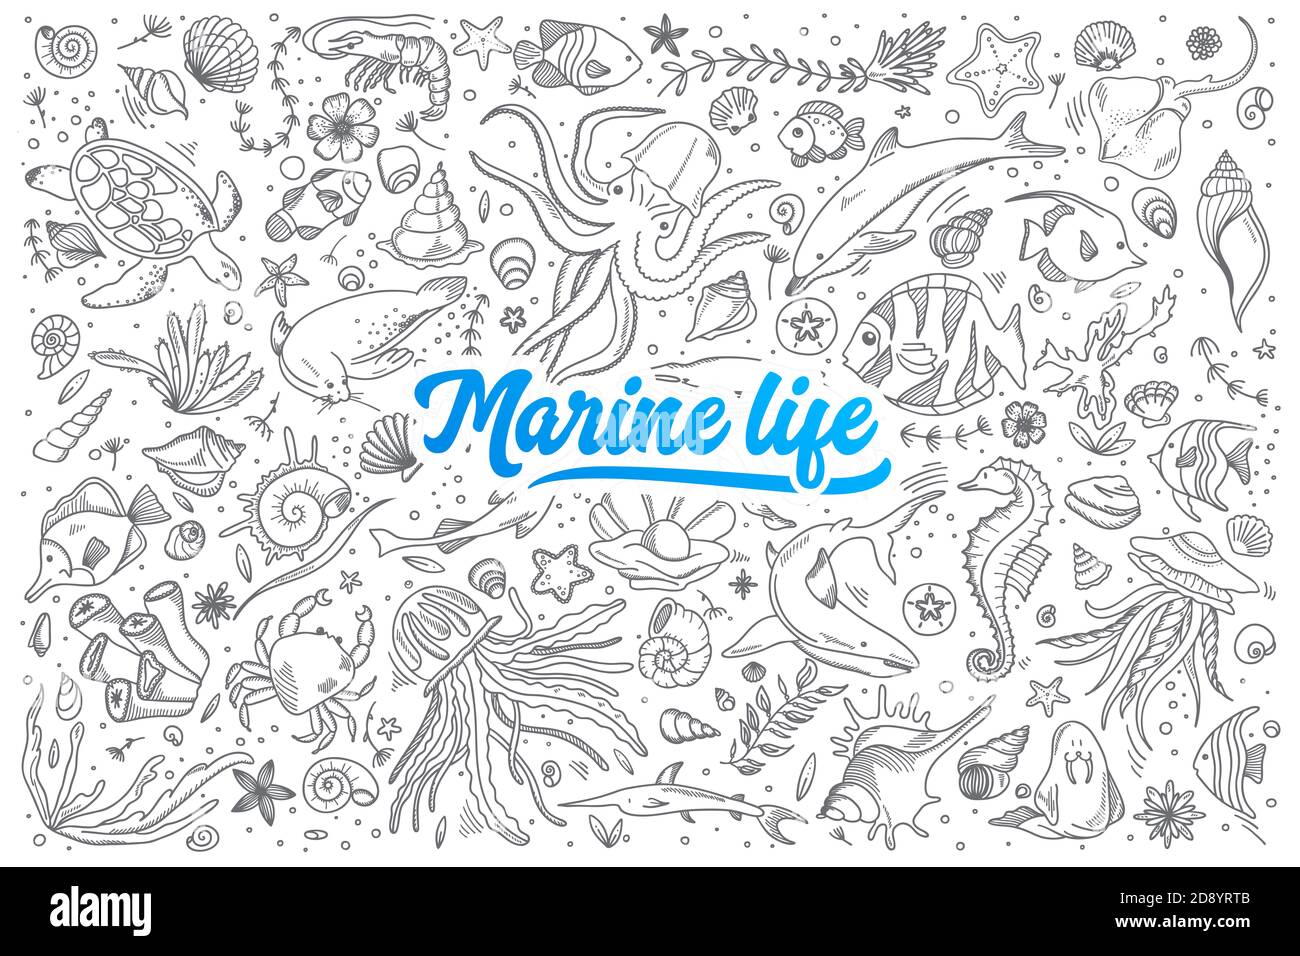 Handgezeichnetes Set marine life doodles mit blauen Schriftzügen In Vektor Stockfoto